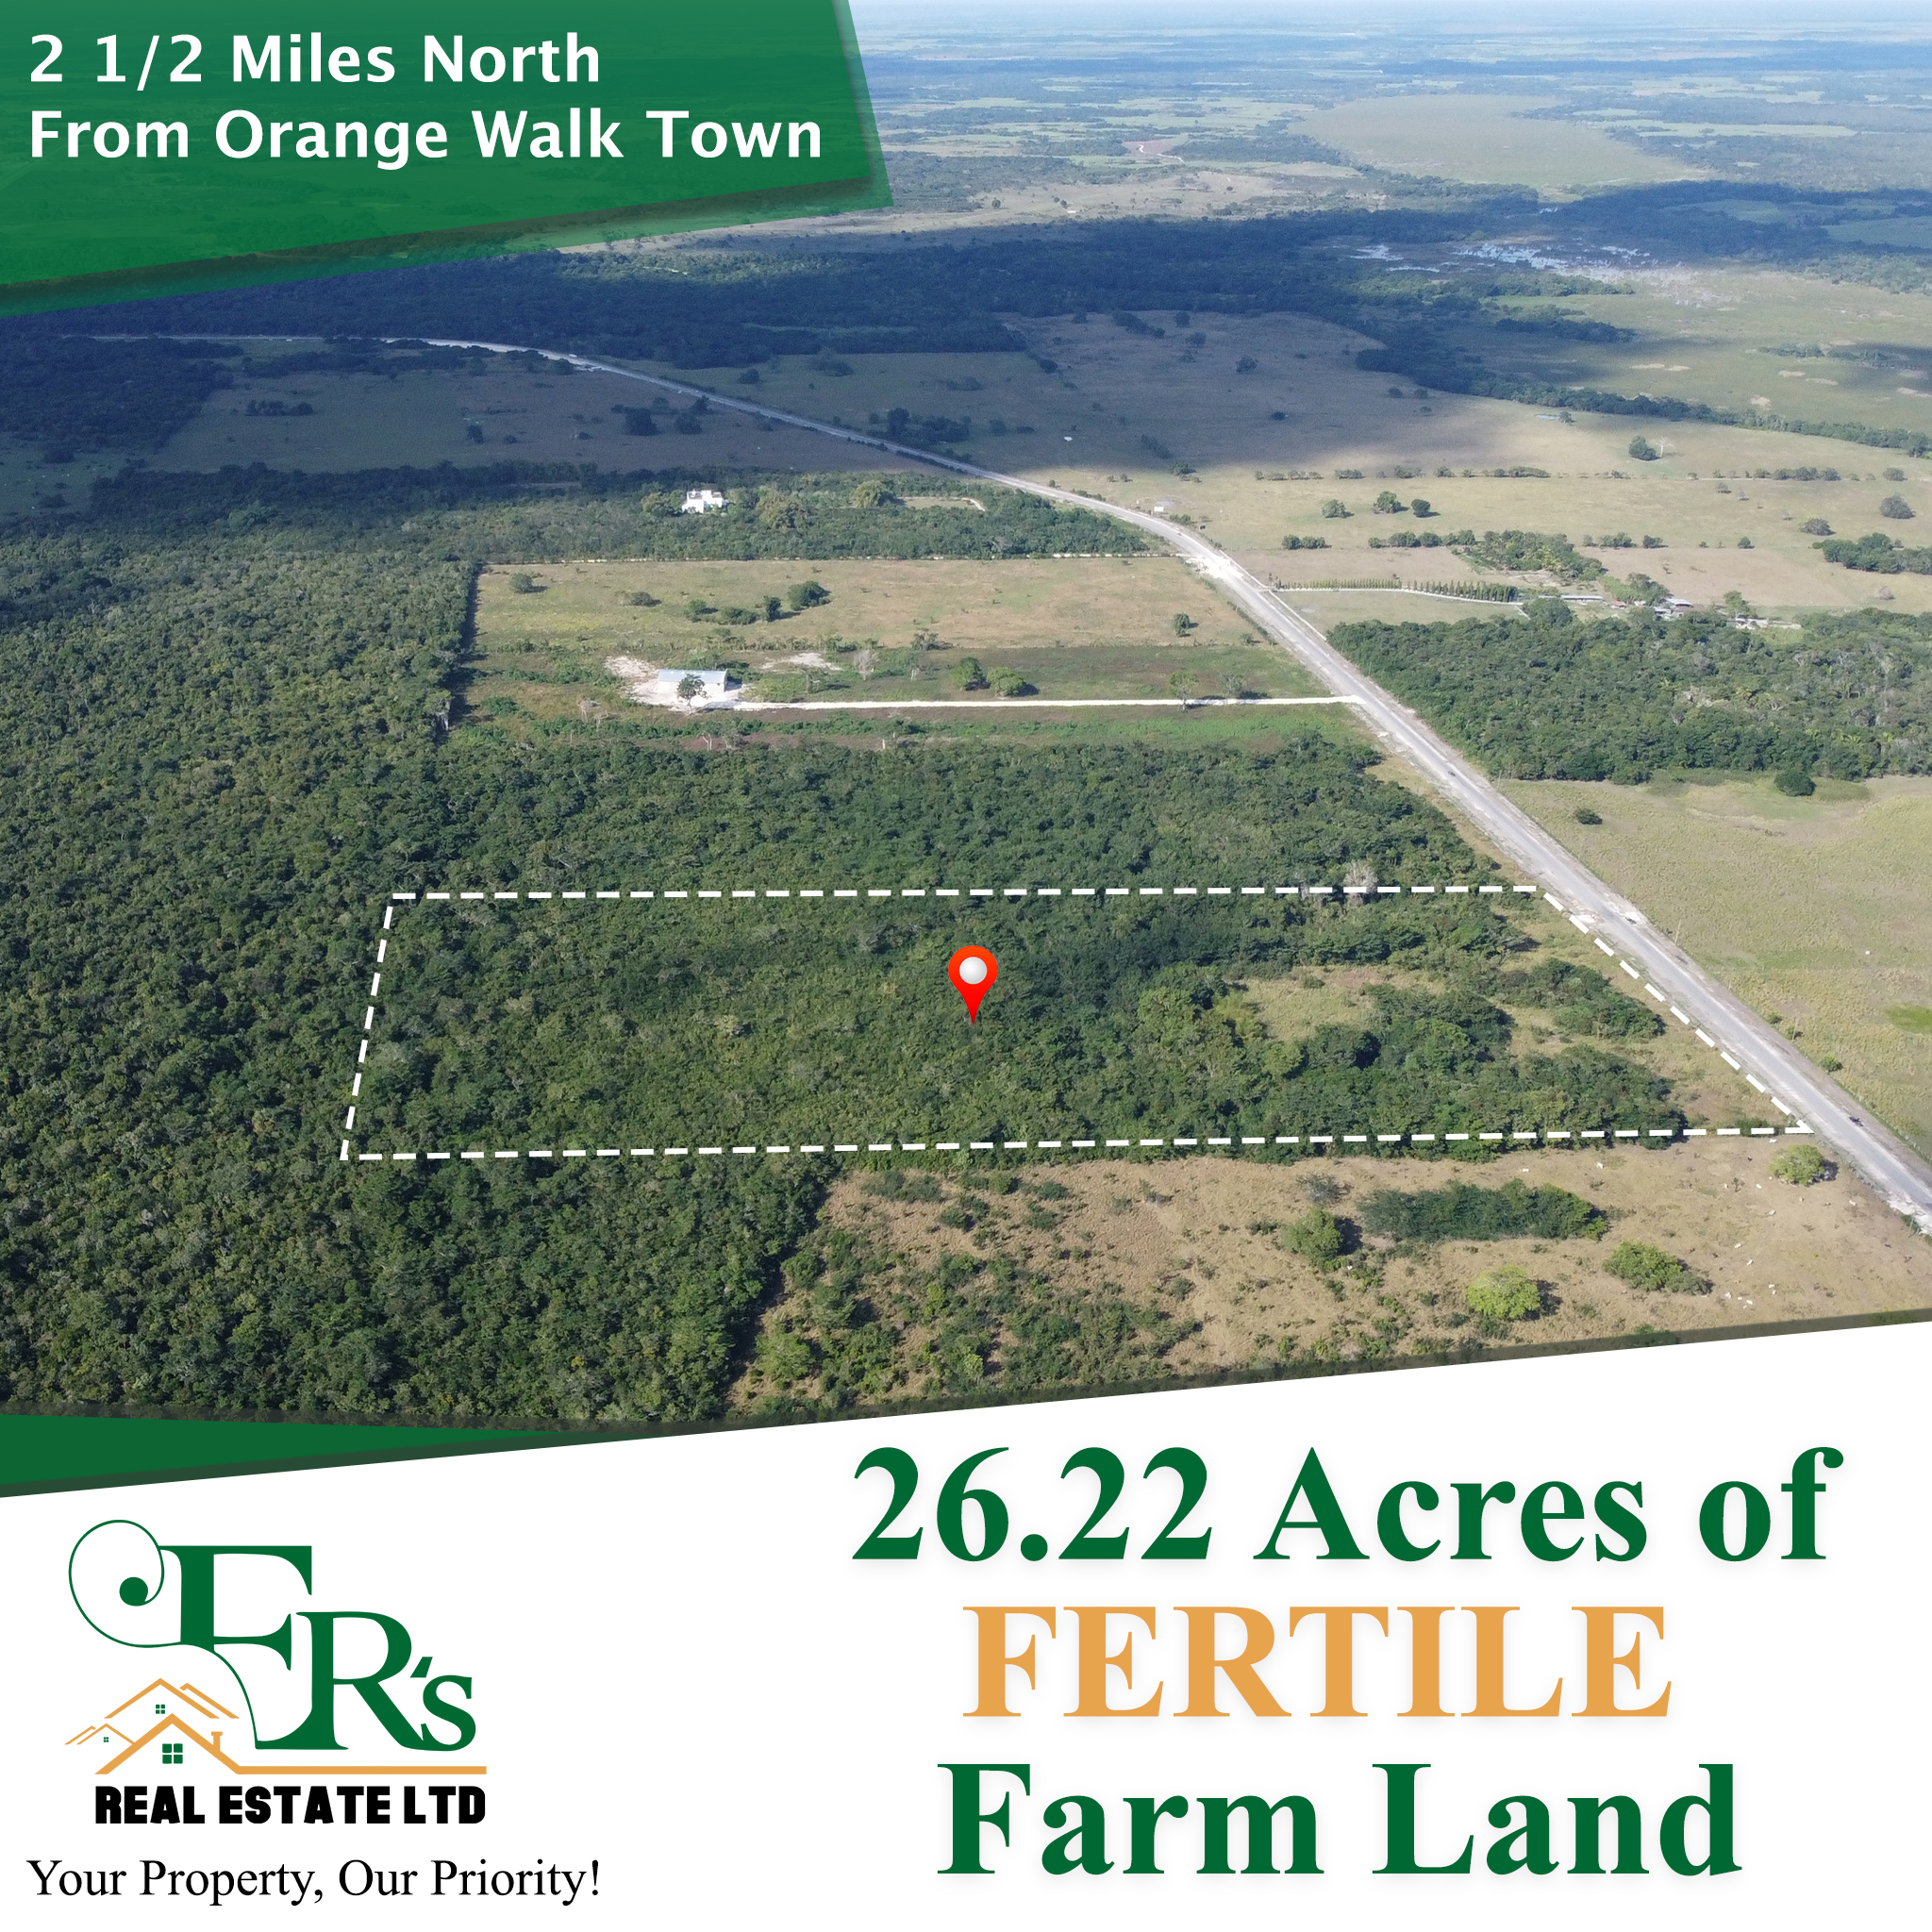 26.22 Acres Of Fertile Farm Land